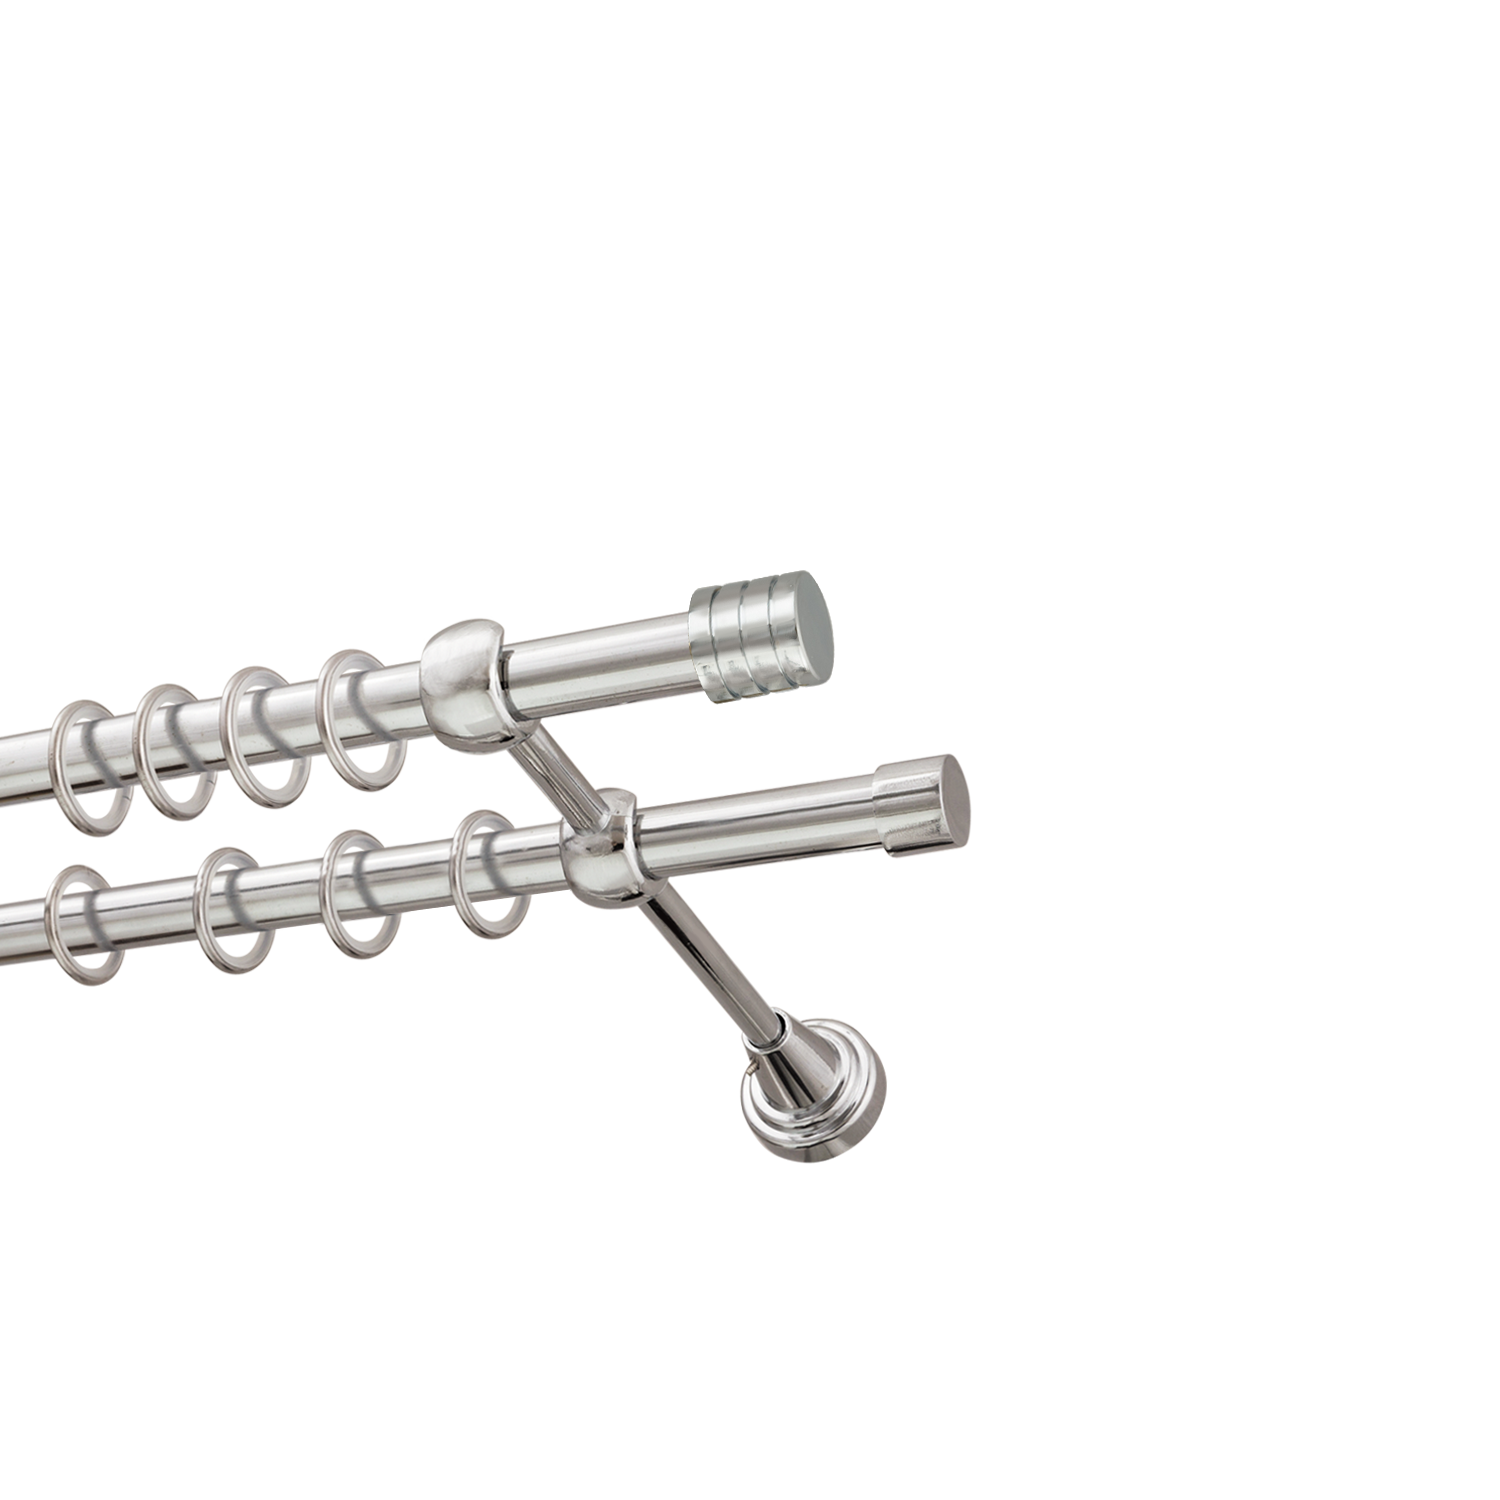 Металлический карниз для штор Подиум, двухрядный 16/16 мм, серебро, гладкая штанга, длина 180 см